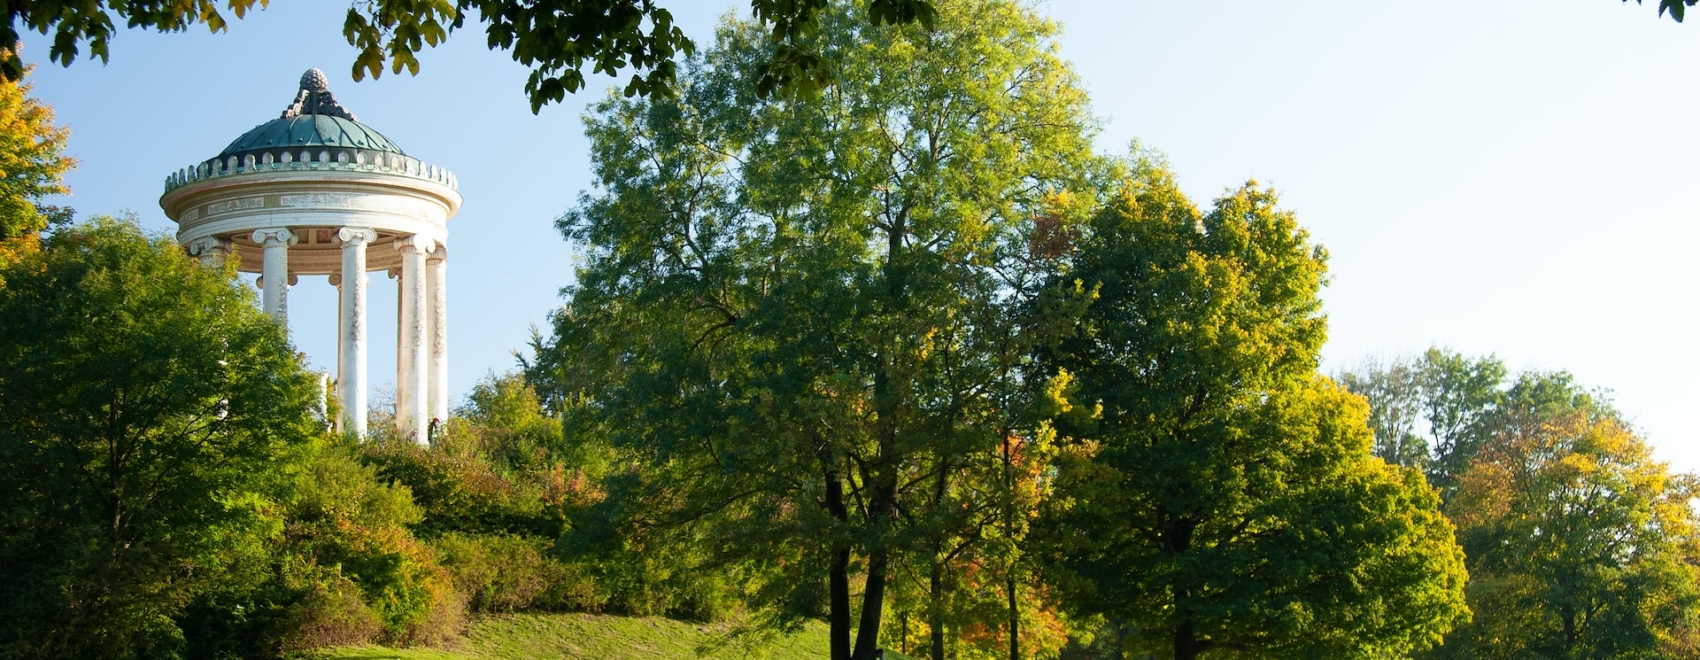 Englischer Garten im Sommer mit Monopteros im Hintergrund, München